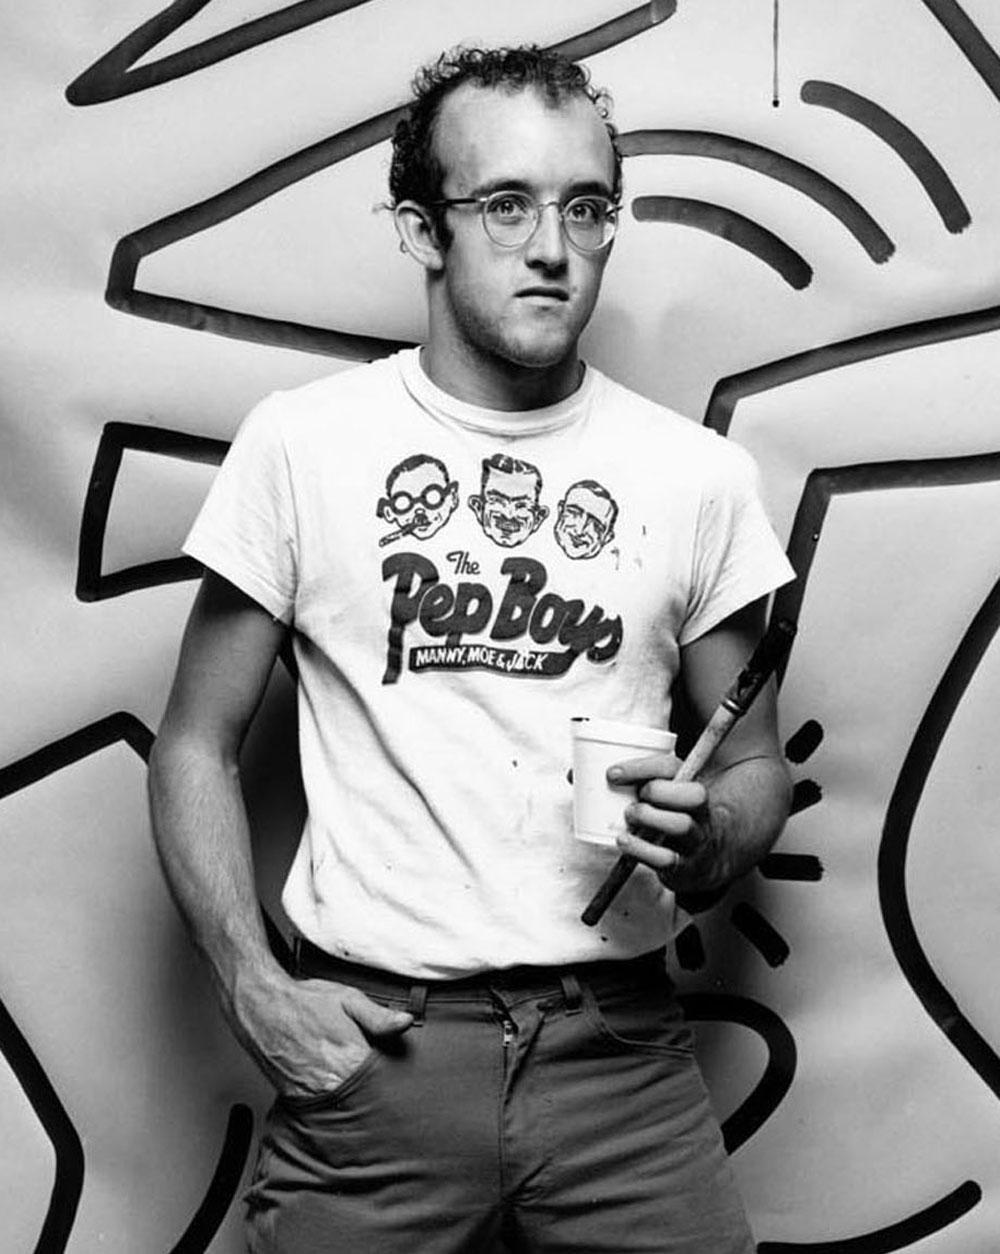  Graffiti Artist Keith Haring Studio Portrait with Just Completed Work (Portrait du studio de l'artiste graffiti Keith Haring avec l'œuvre qu'il vient de terminer) - Photograph de Jack Mitchell